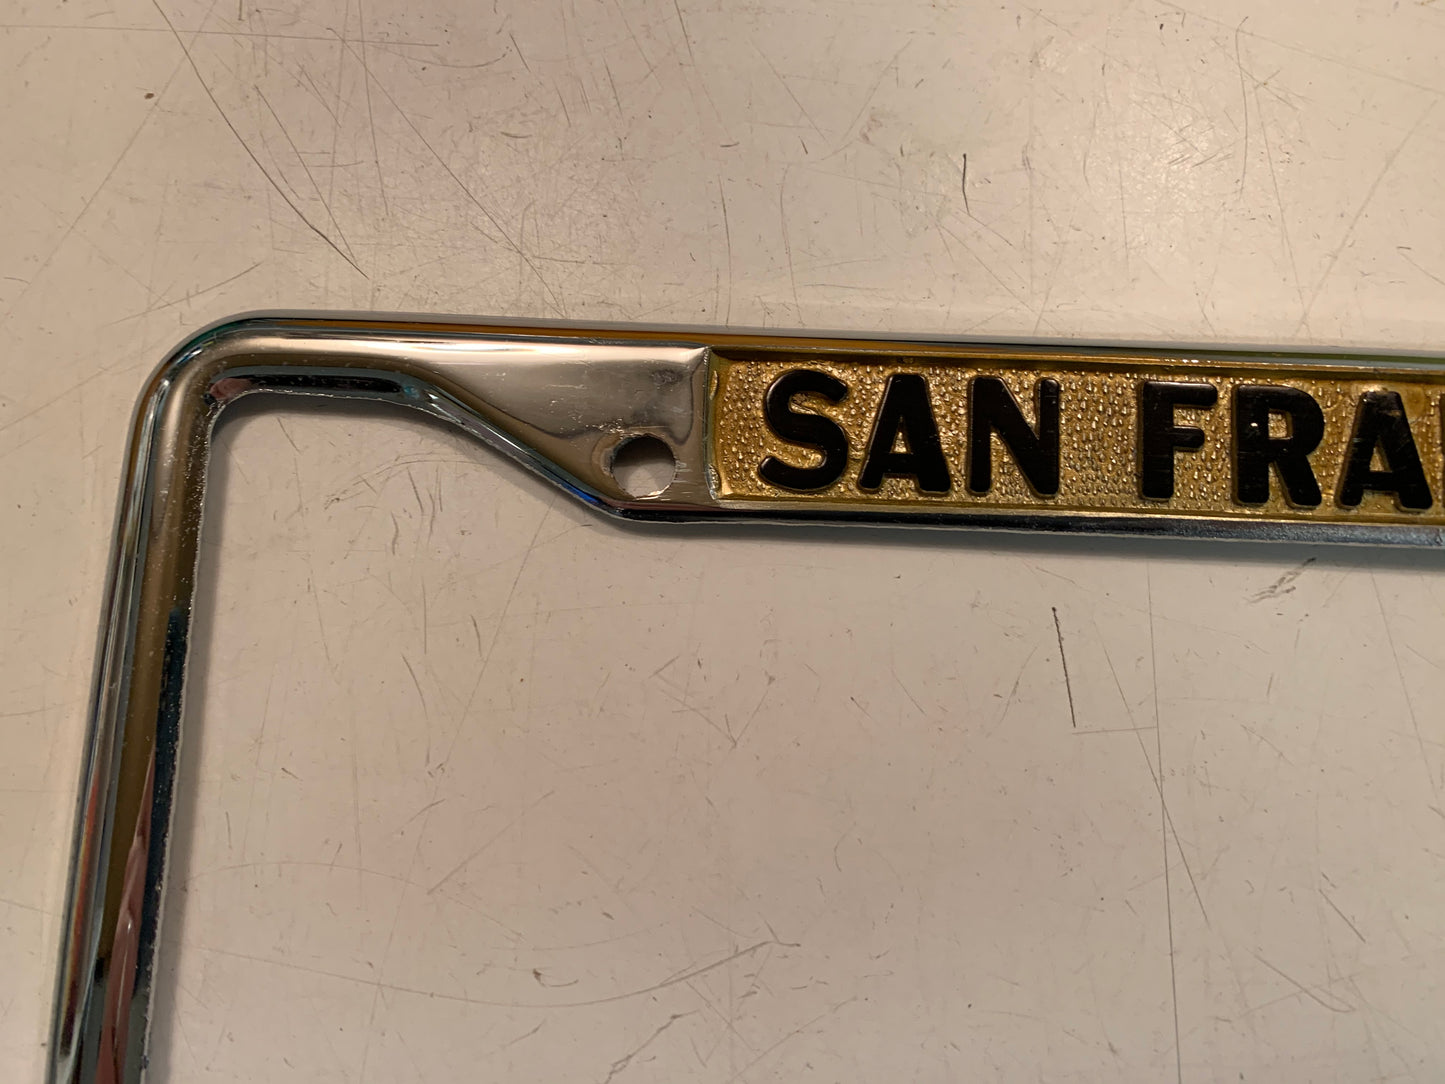 Vintage Metal License Plate Frame Holder Herrera Buick San Francisco Auto Jaydie